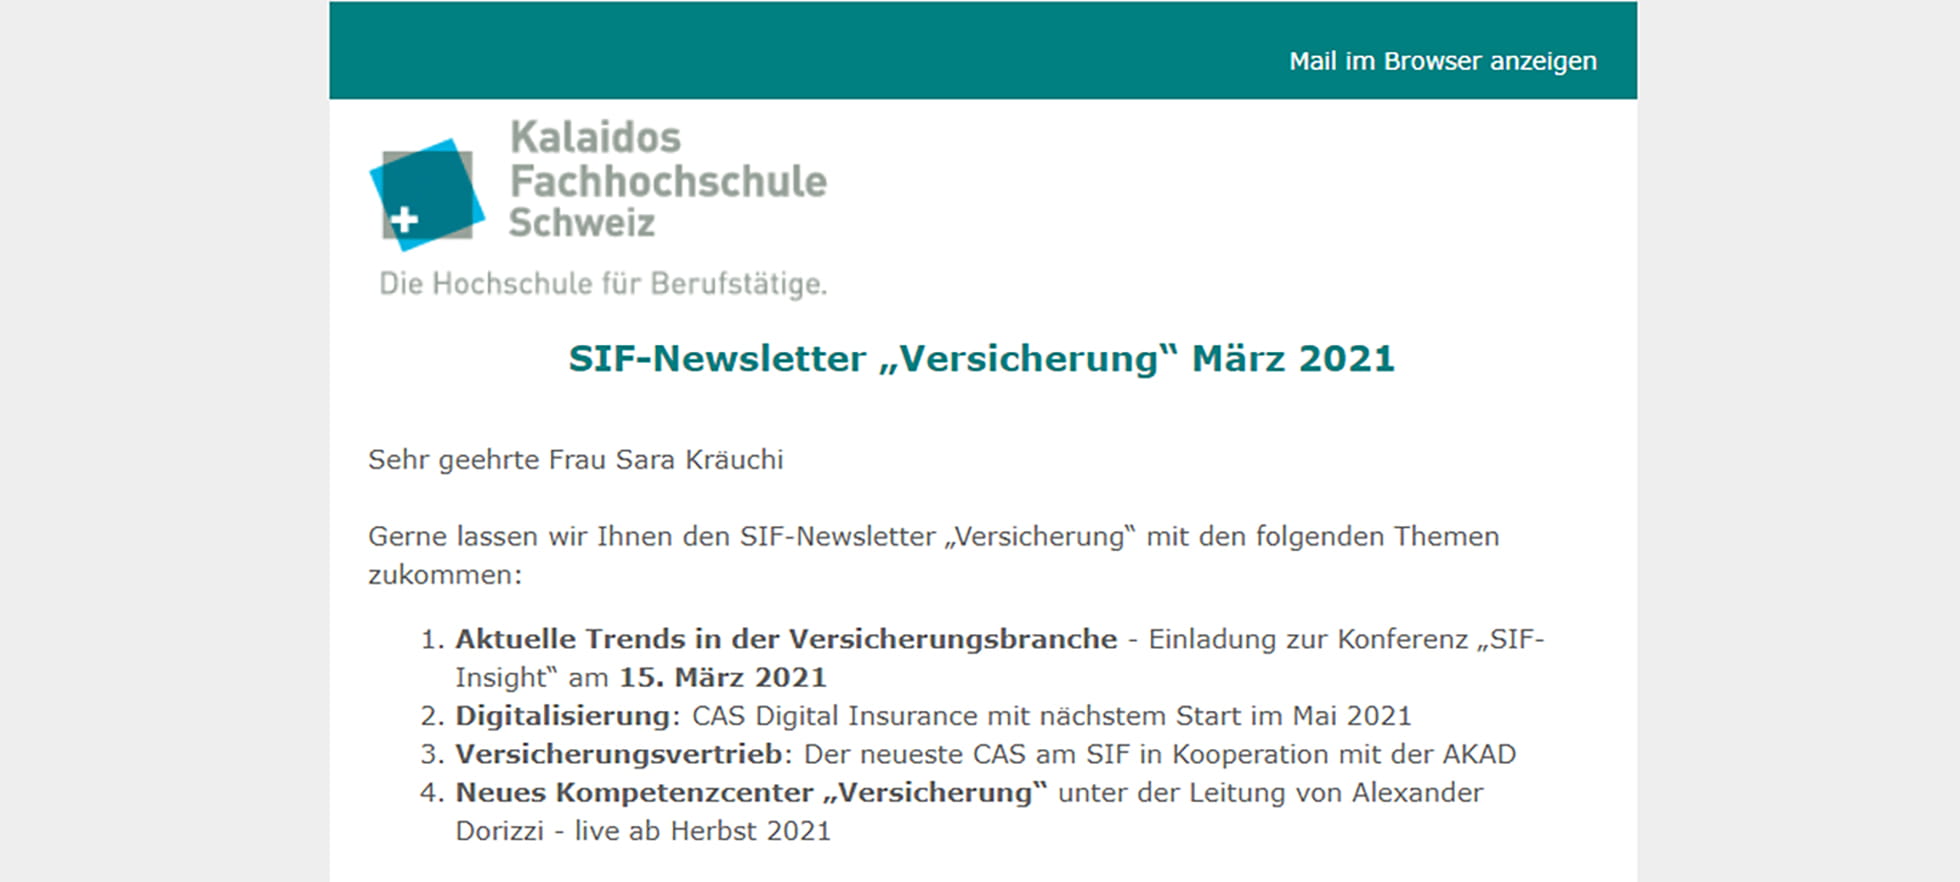 SIF Newsletter "Versicherung"